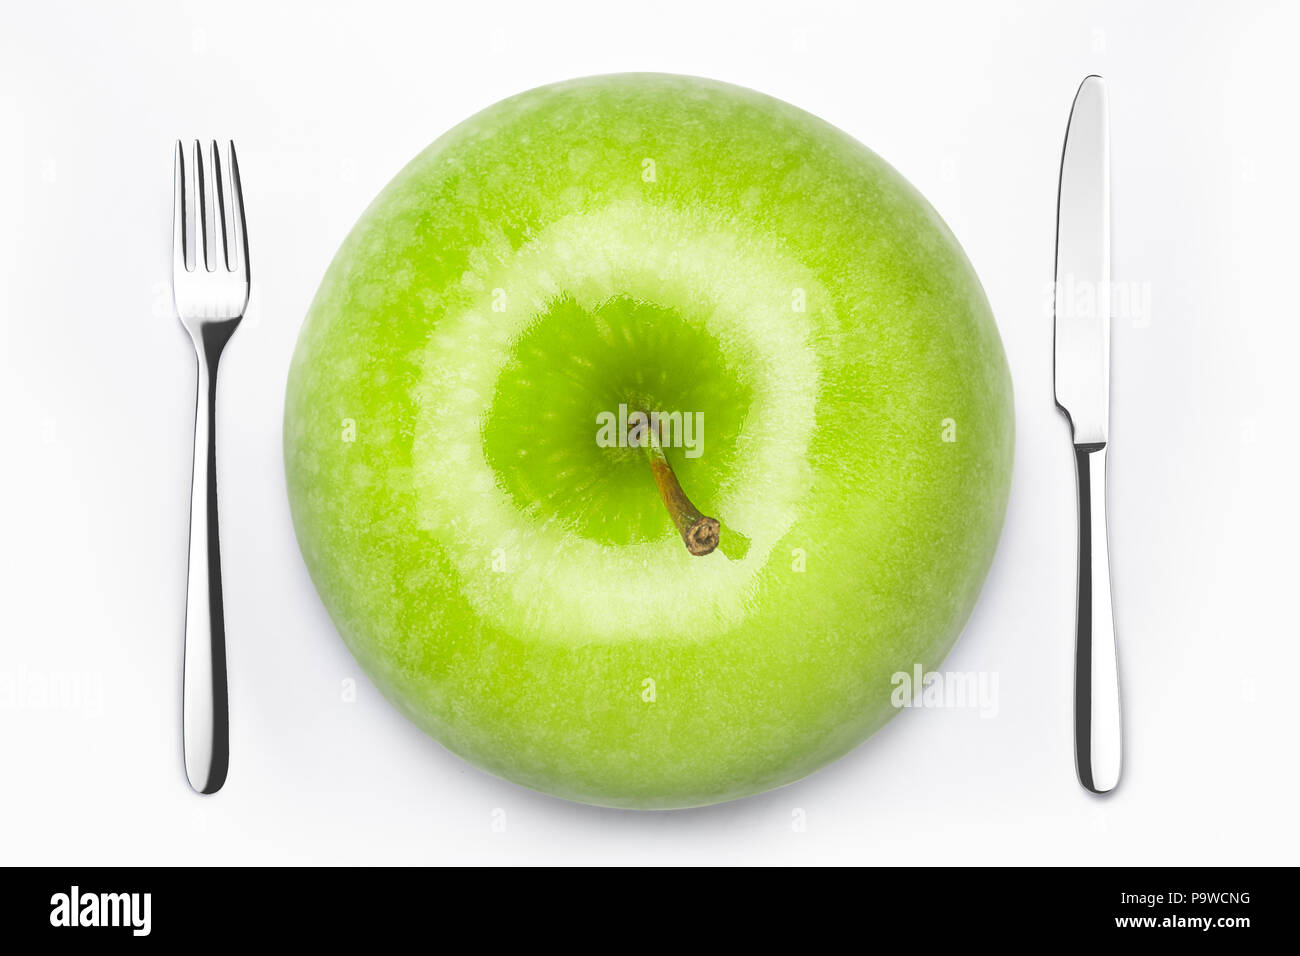 Concept de régime, vert pomme sur une assiette blanche, fourchette, couteau, poids Banque D'Images